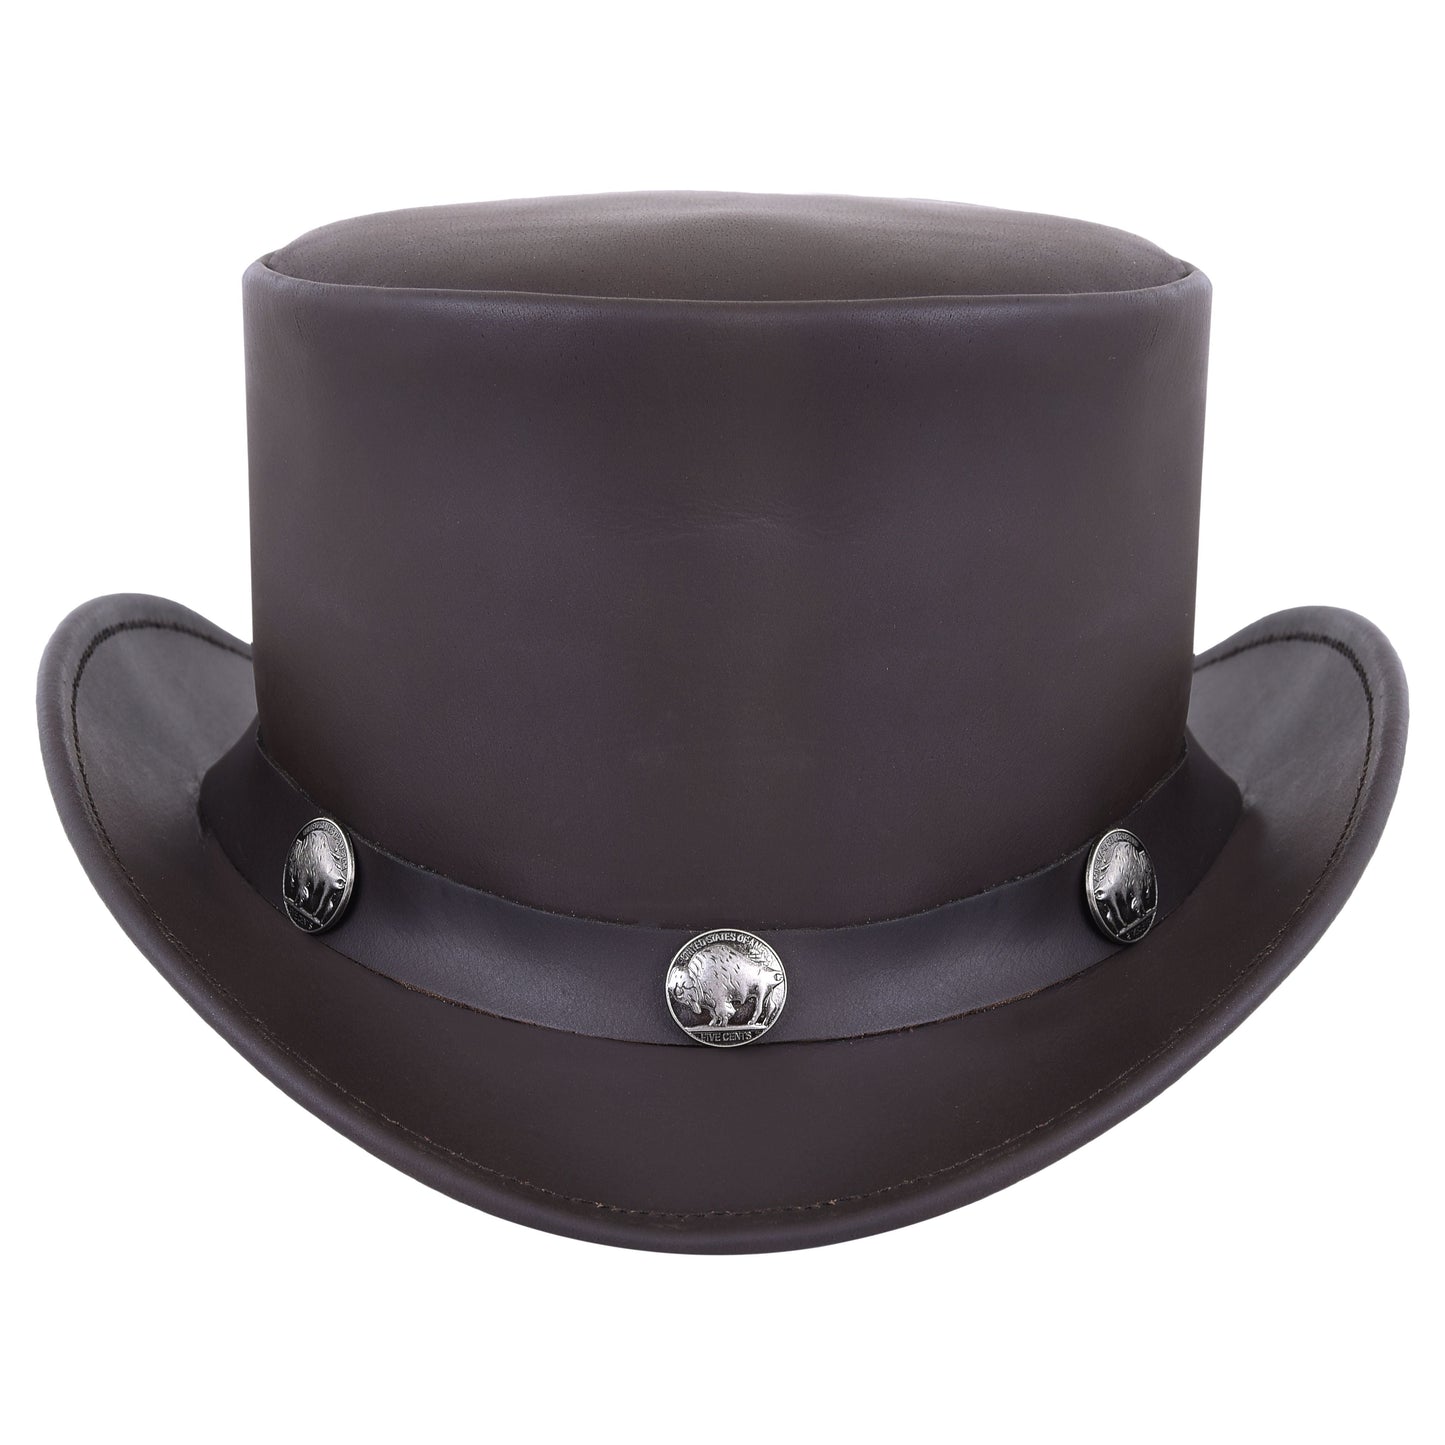 El Dorado Steampunk Cowhide Leather Brown Top Hat With Buffalo Nickel Band